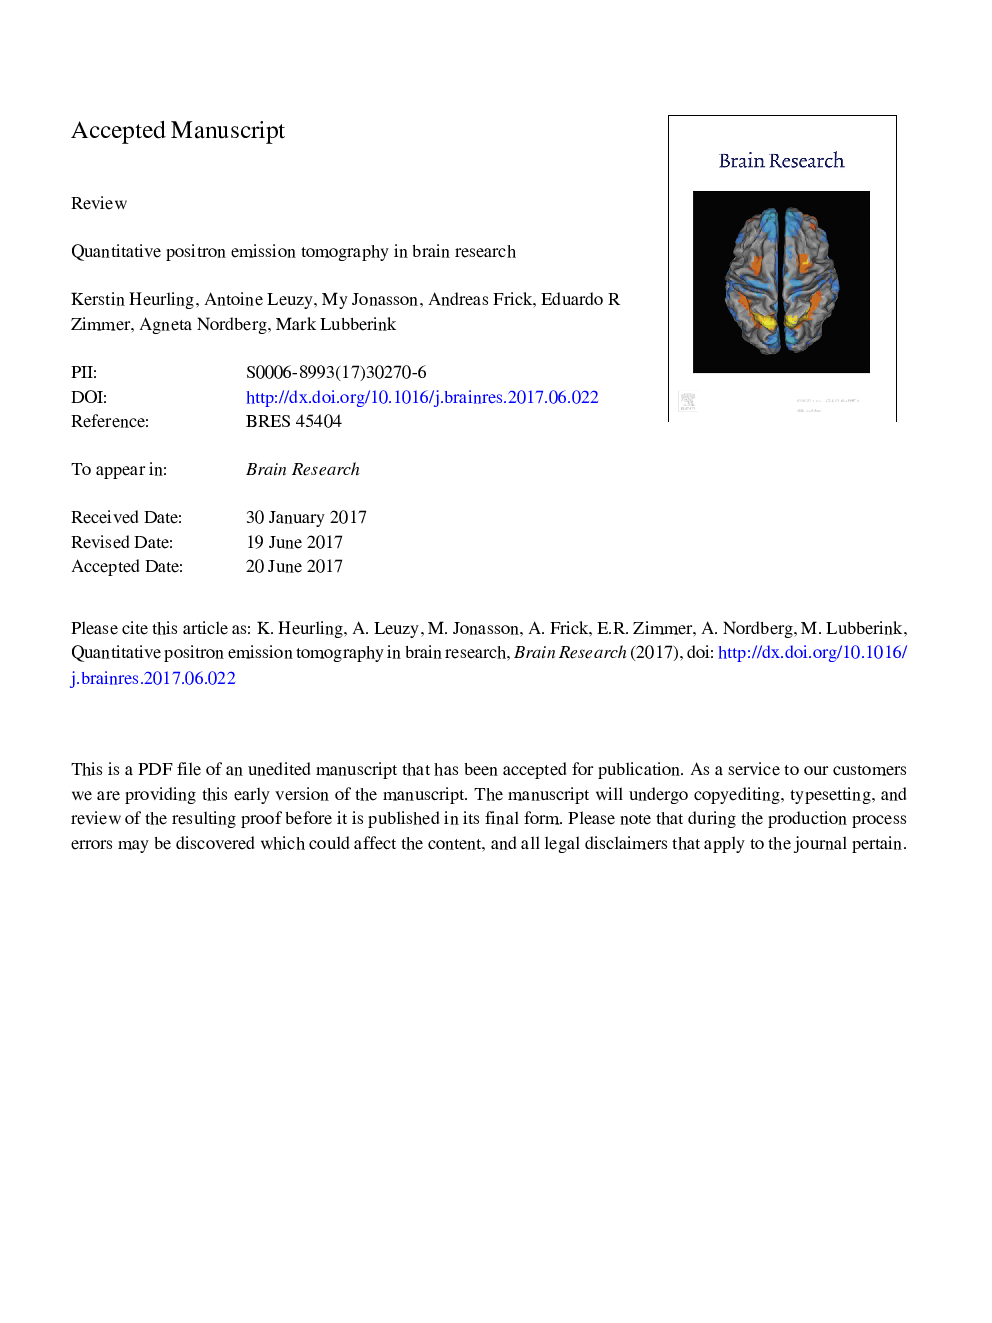 توموگرافی انتشارات مثبت در تحقیقات مغزی 